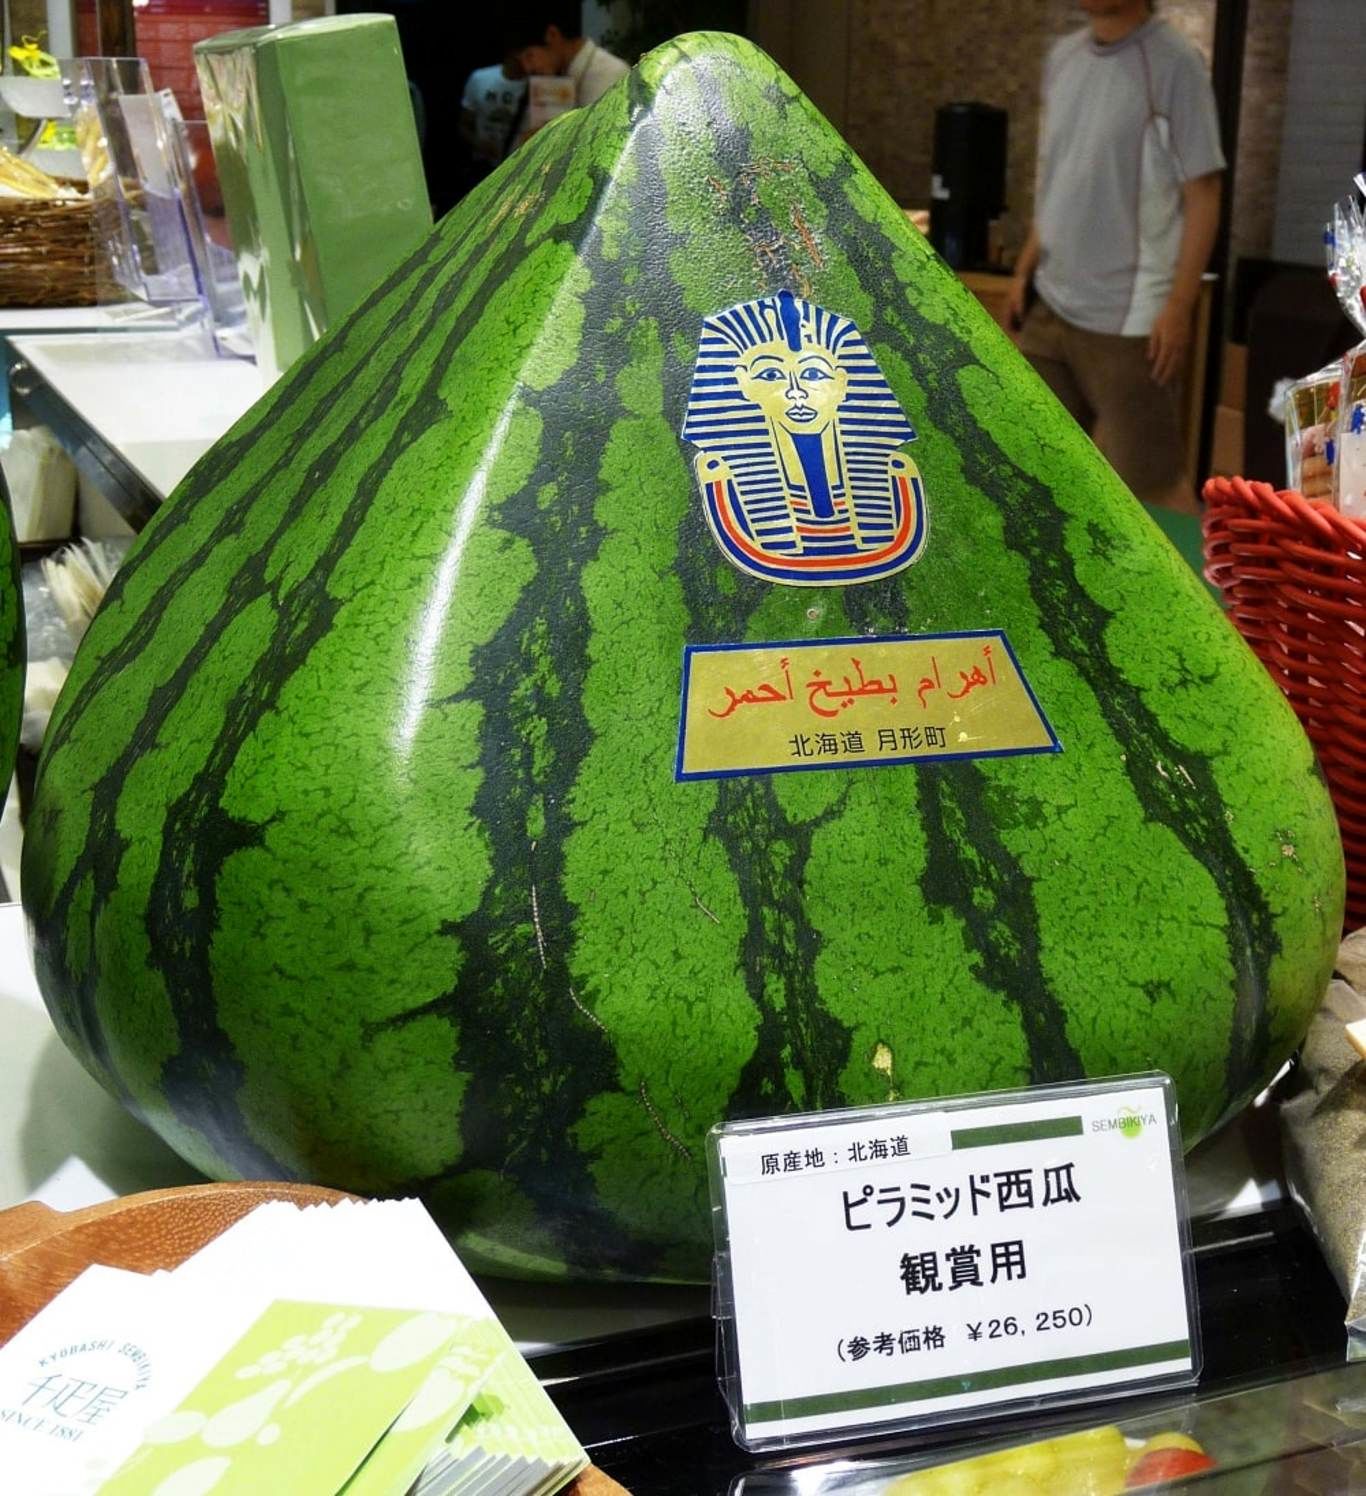 هندوانه طرح اهرام مصر در ژاپن!